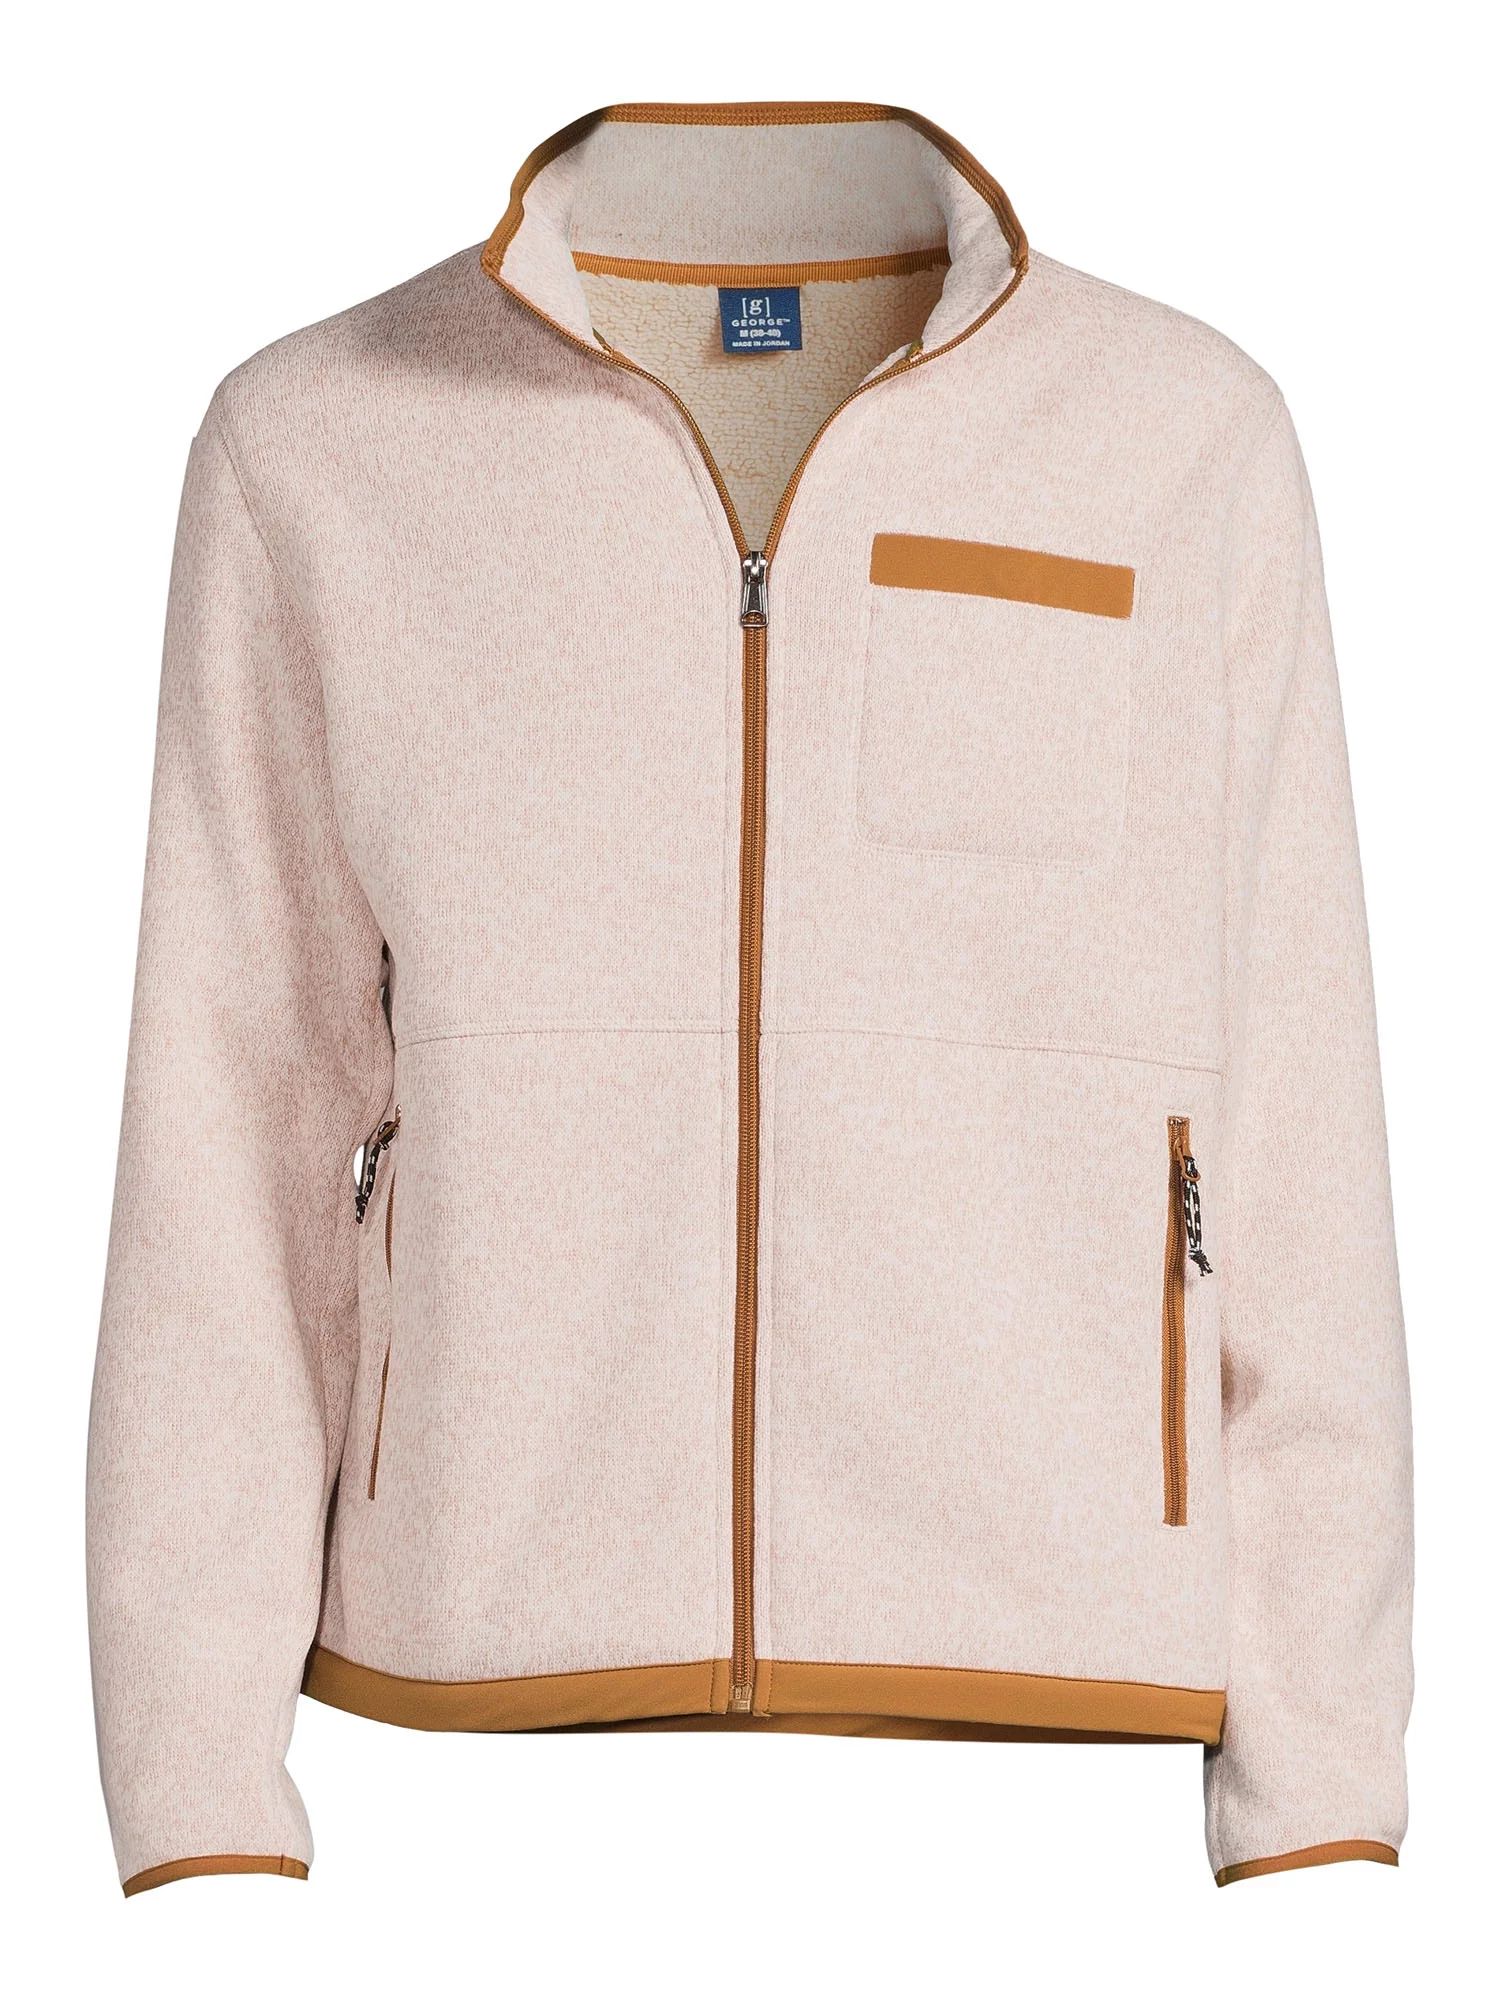 George Men's and Big Men's Sweater Fleece Jacket, up to Size 5XL - Walmart.com | Walmart (US)